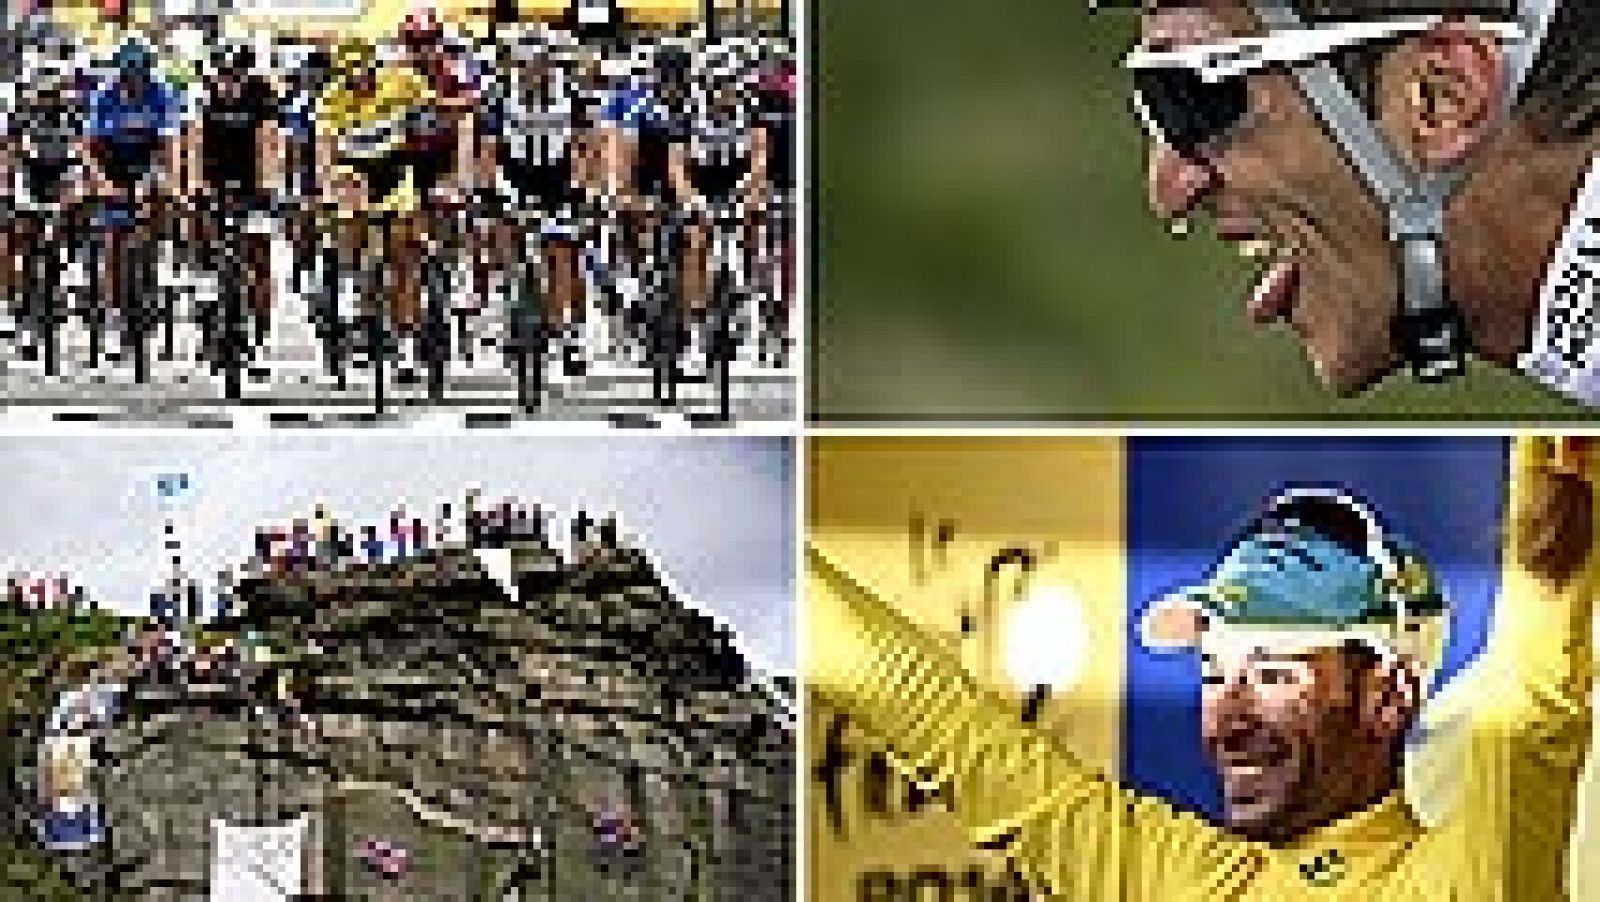 El italiano Vincezo Nibali se enfundó hoy el último maillot de líder de una grande que le faltaba. Solo otro ciclista en activo ha logrado el liderato de Tour, Giro y Vuelta, el español Alberto Contador.